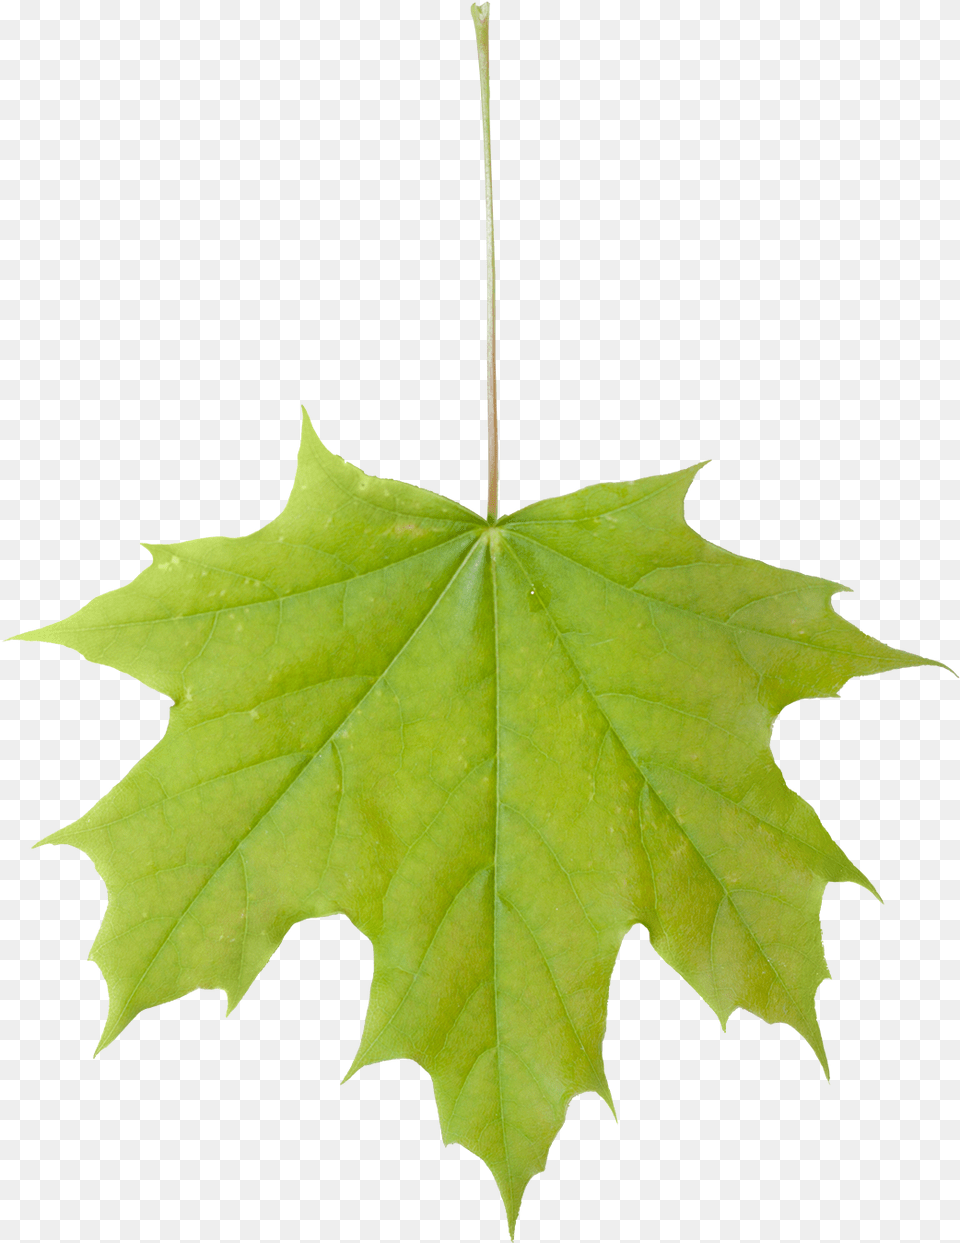 Vegetation Leaf Maple, Plant, Tree, Maple Leaf Png